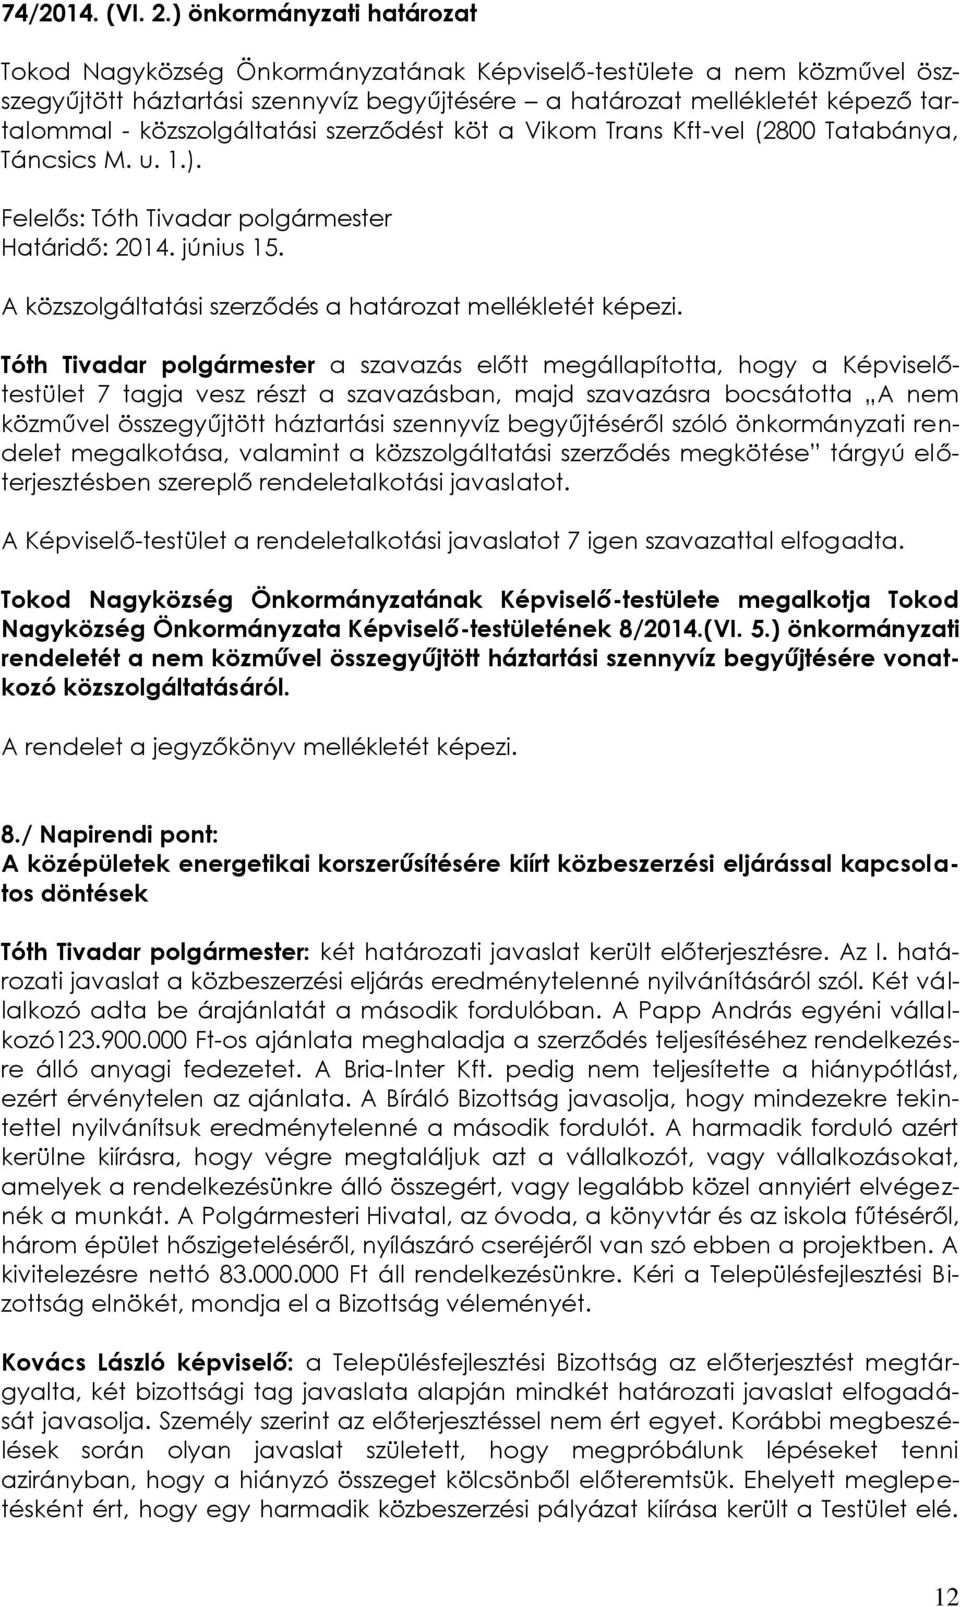 közszolgáltatási szerződést köt a Vikom Trans Kft-vel (2800 Tatabánya, Táncsics M. u. 1.). Felelős: Tóth Tivadar polgármester Határidő: 2014. június 15.